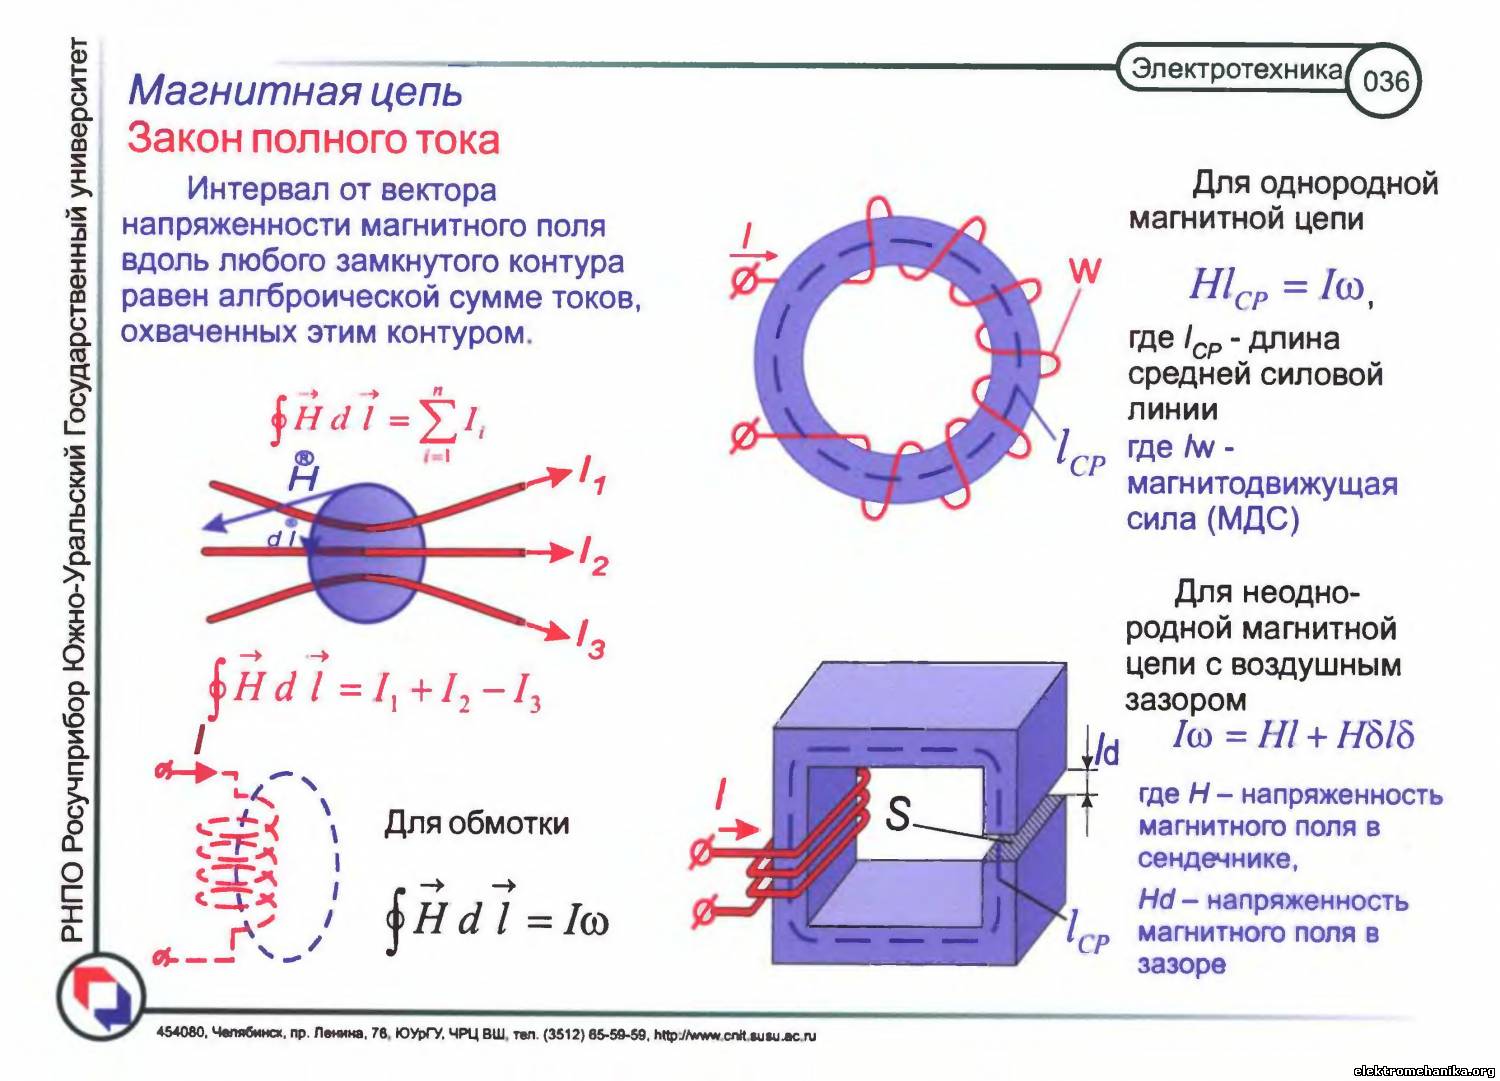 Провод и контур в магнитном поле